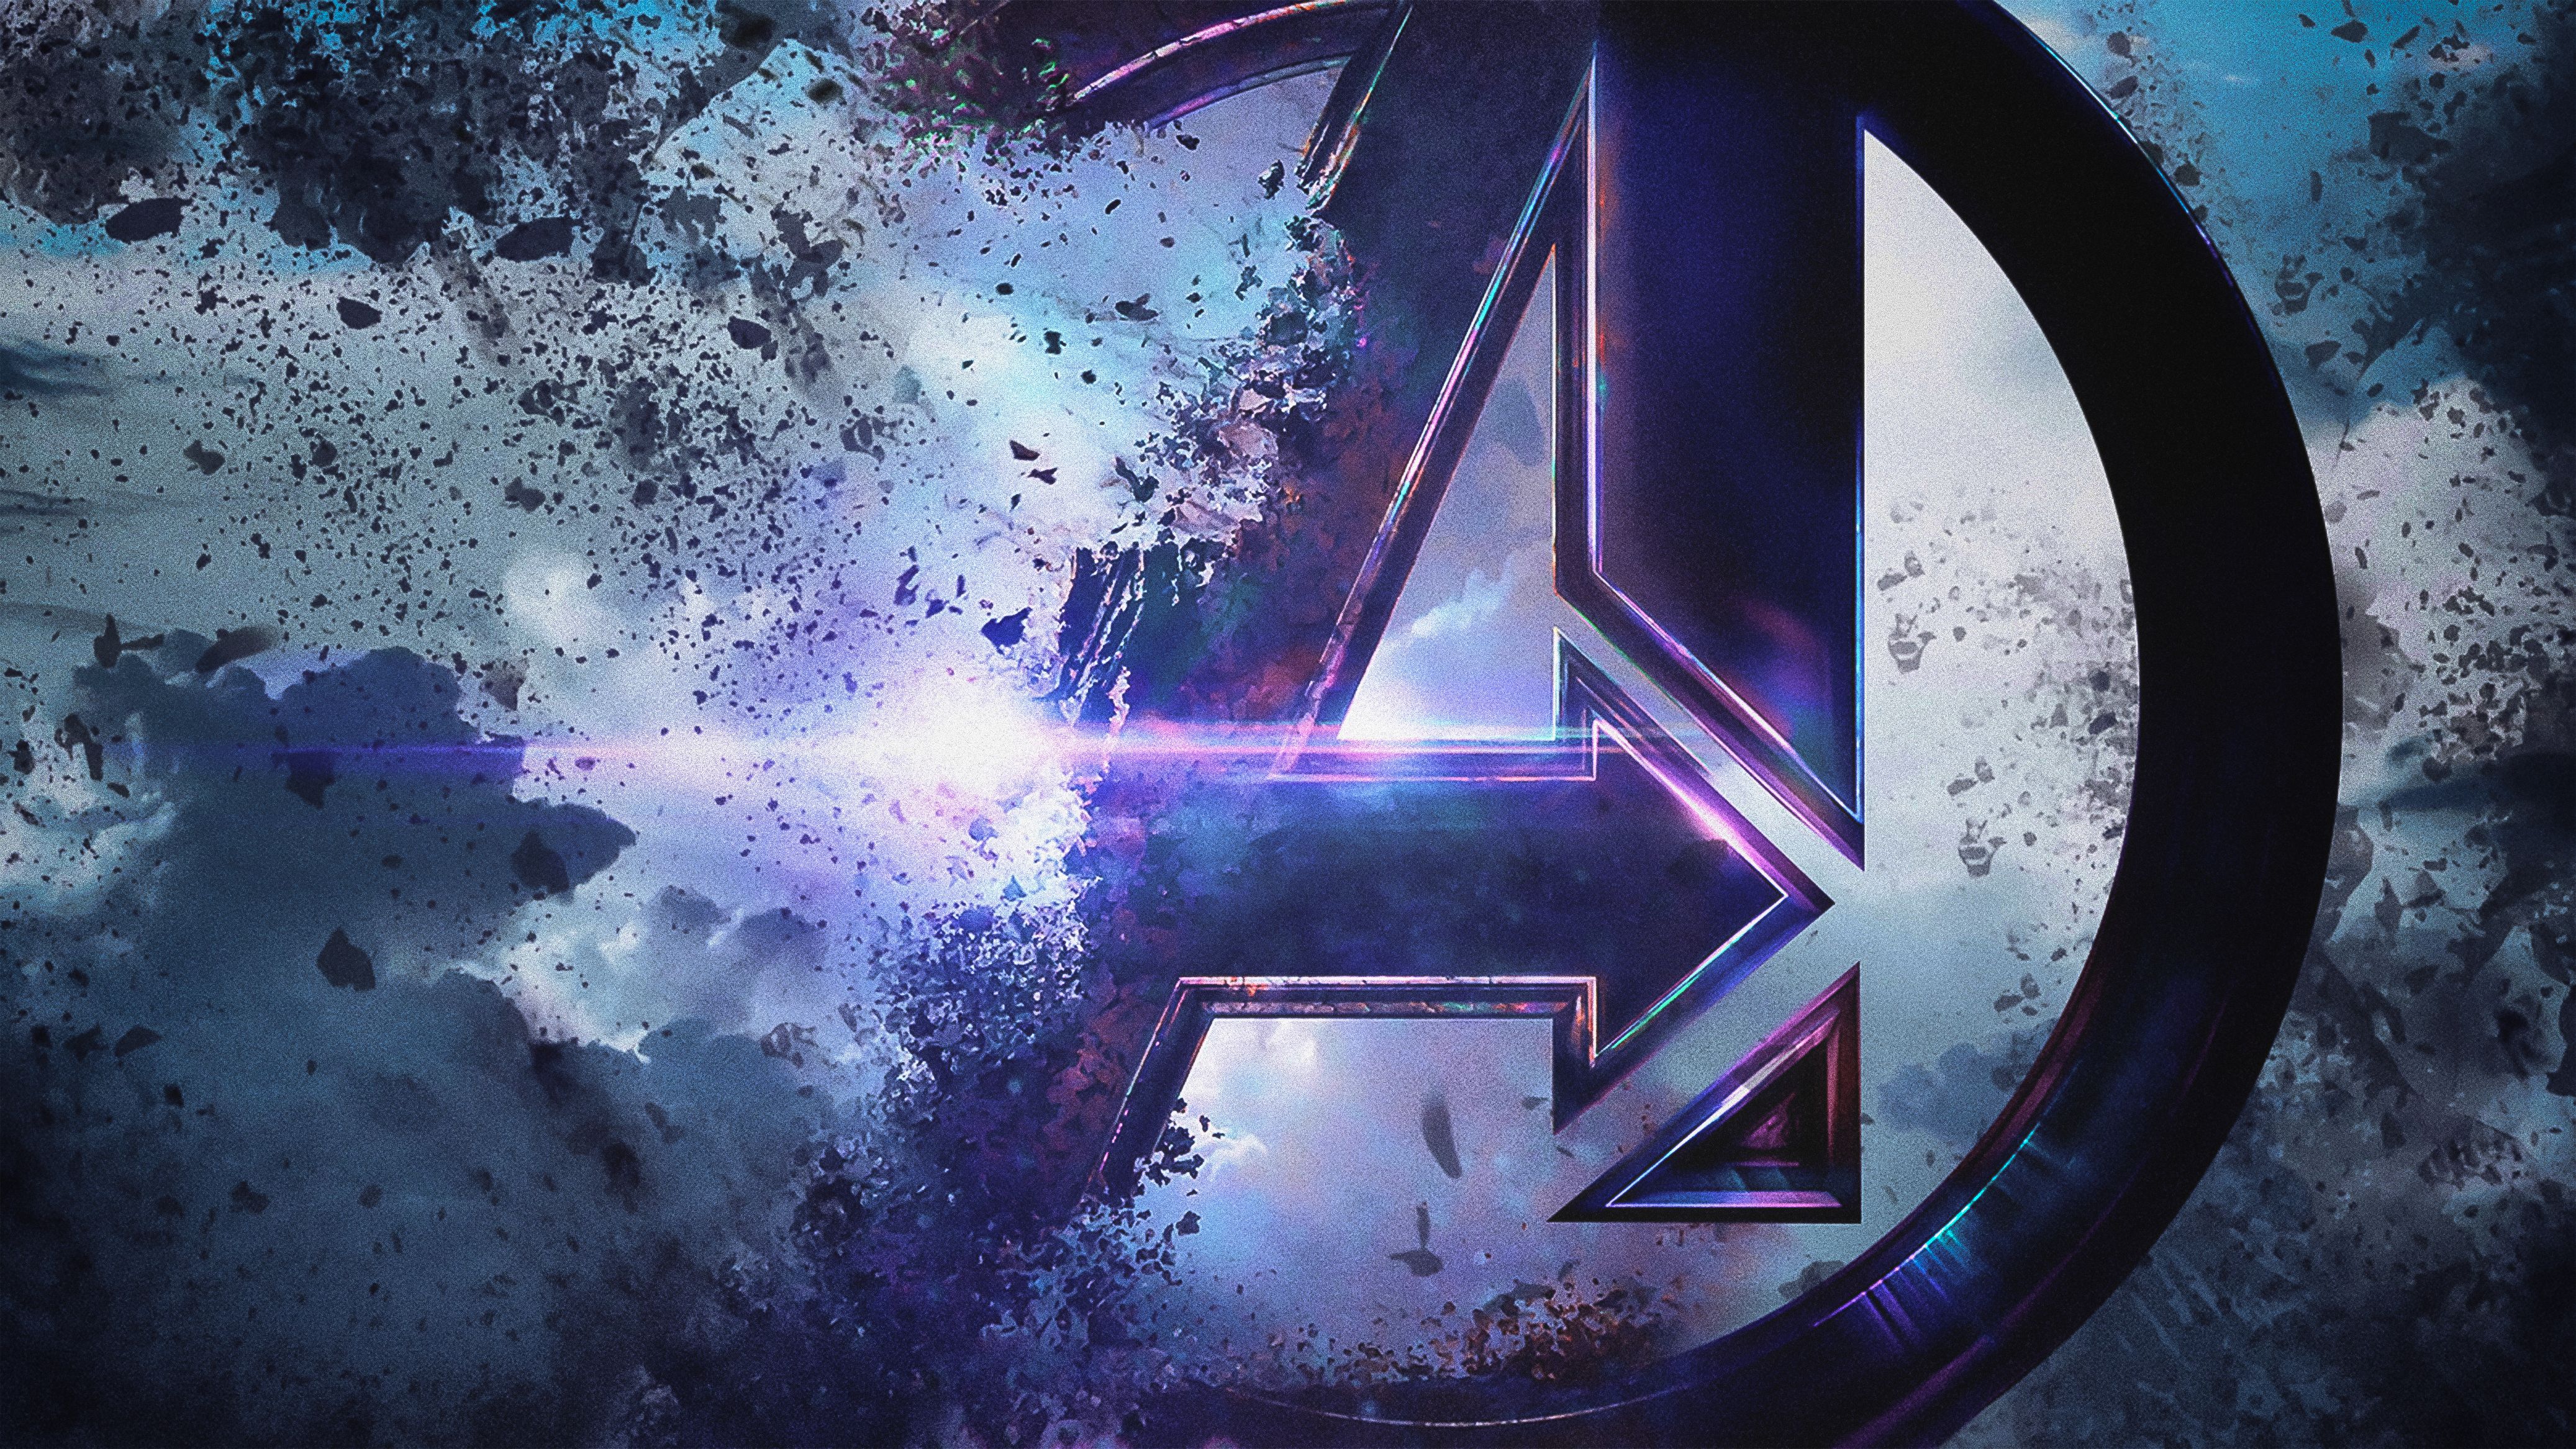 Avengers Endgame 4k Ultra HD Wallpaper. Background Image